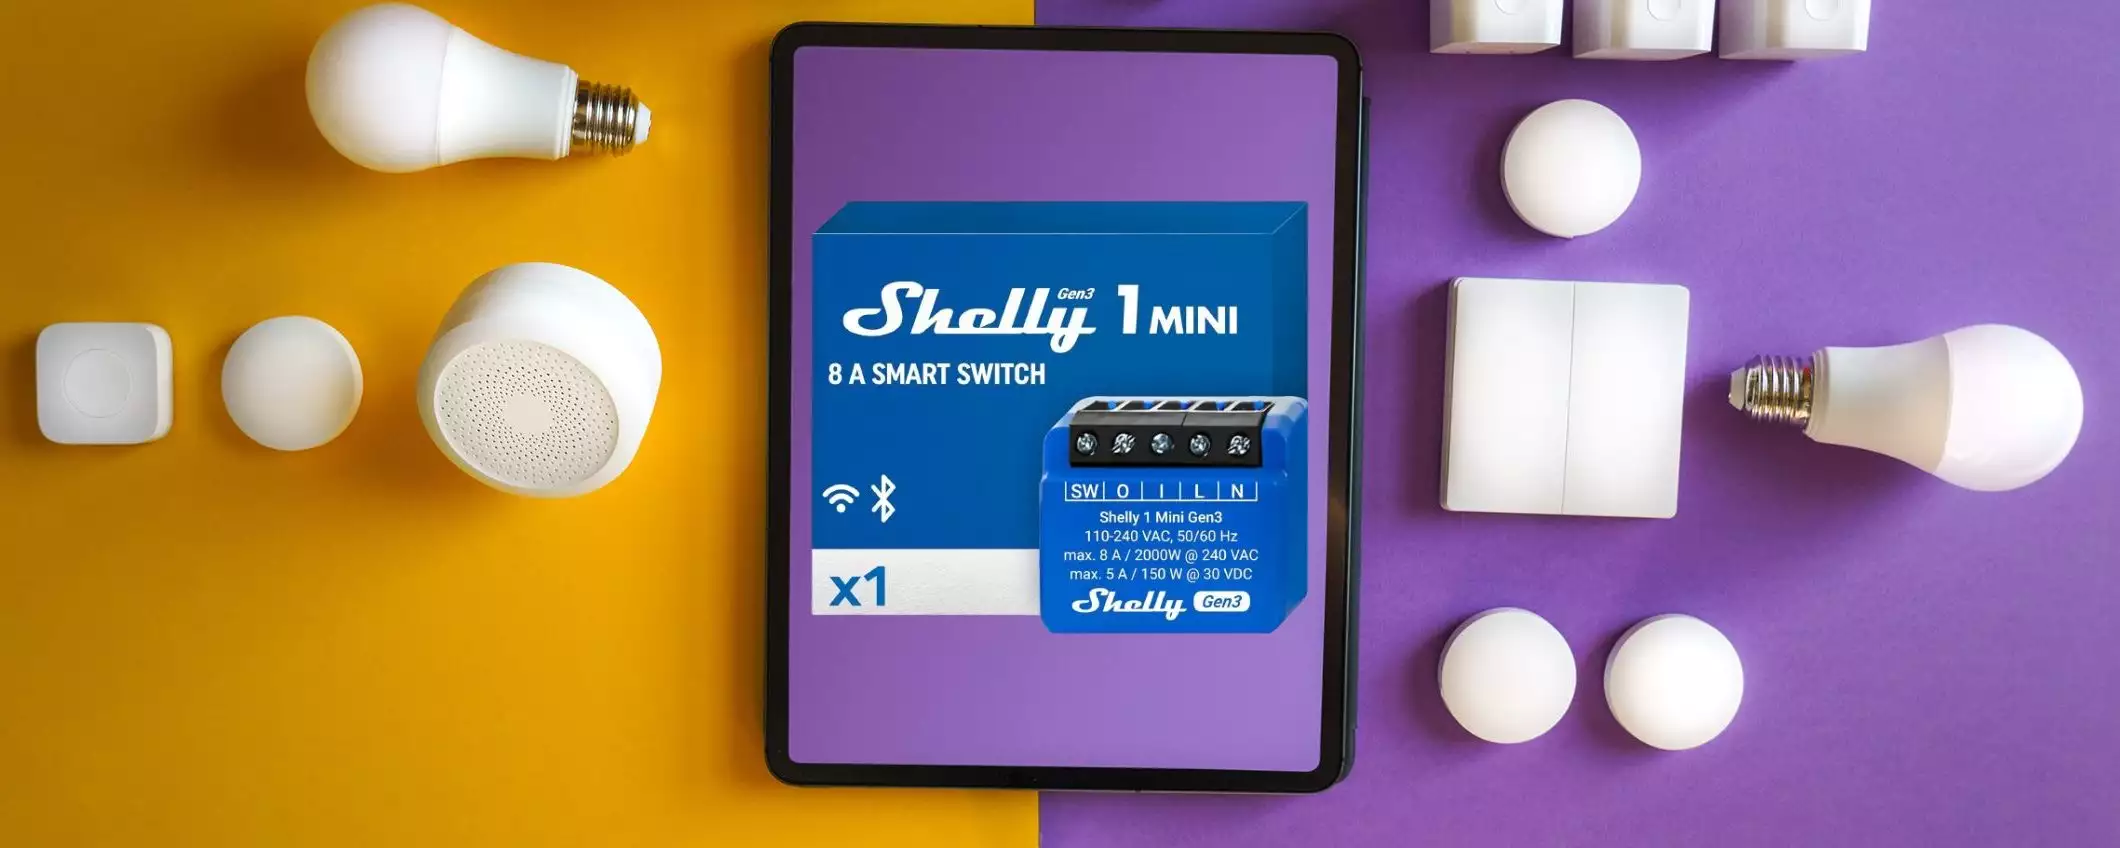 Interruttore SMART Shelly a 9,99€ su Amazon: sconto 50% e prezzo SHOCK